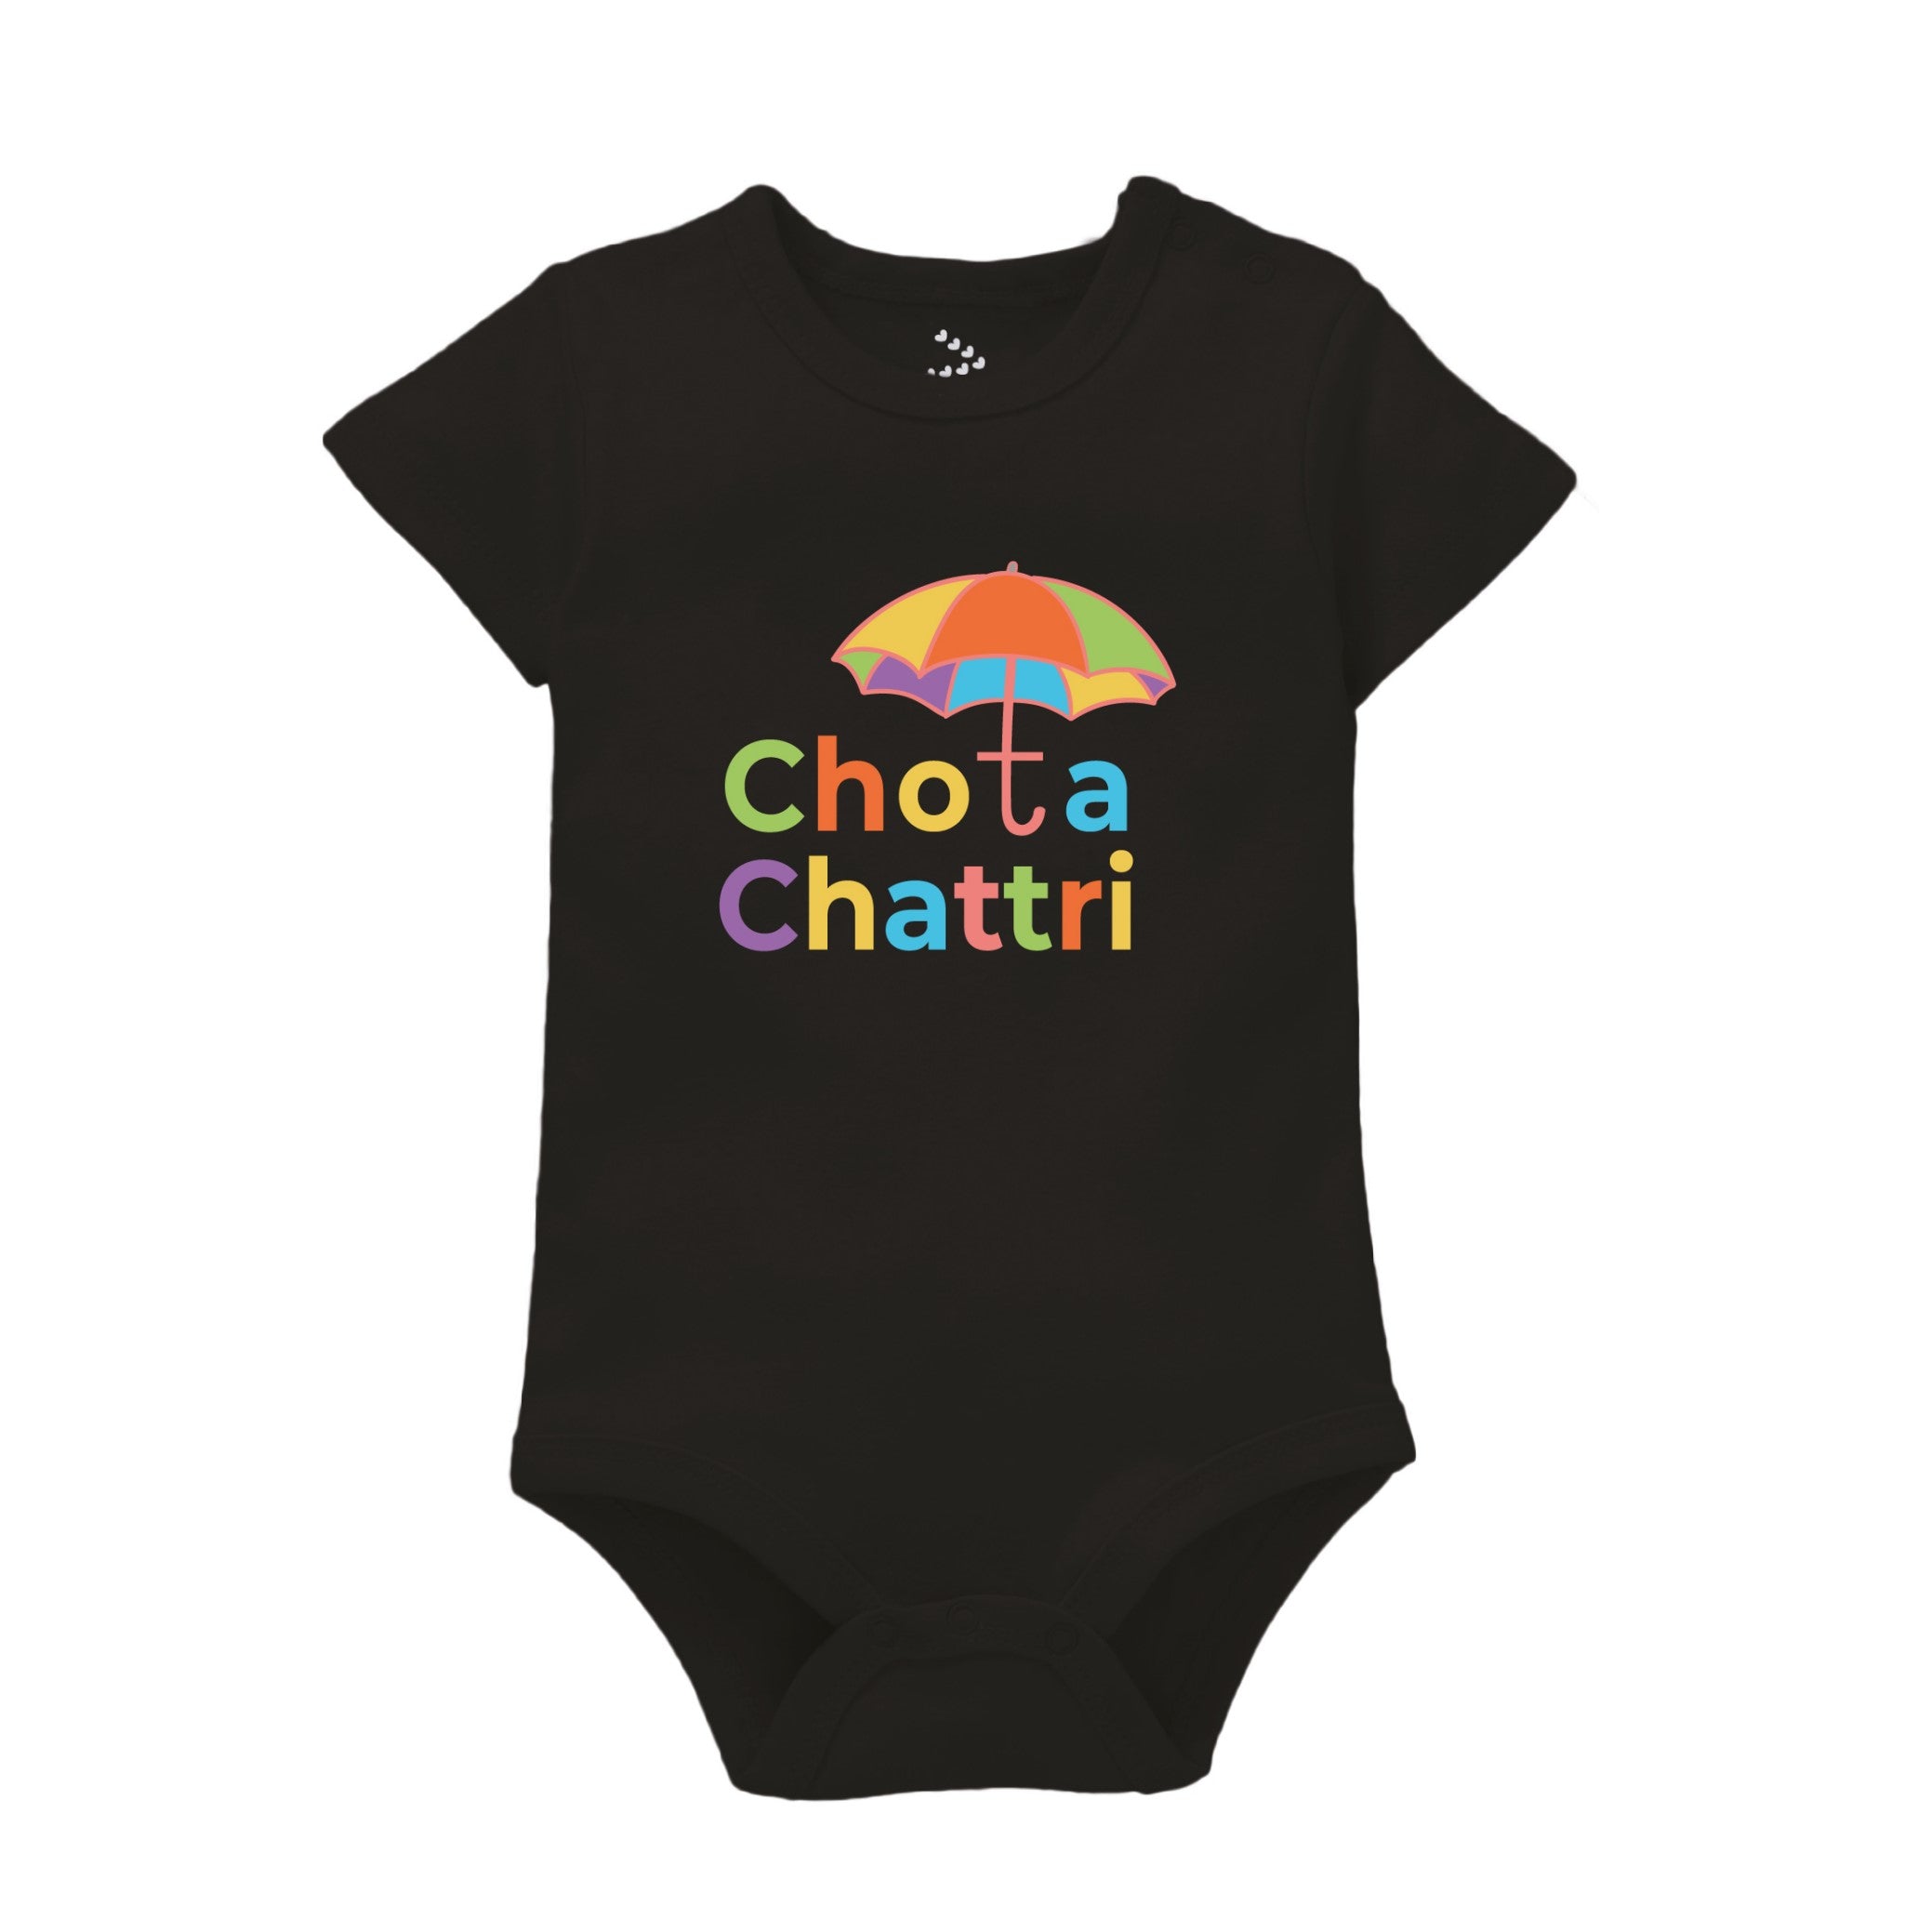 Chota Chattri - Black